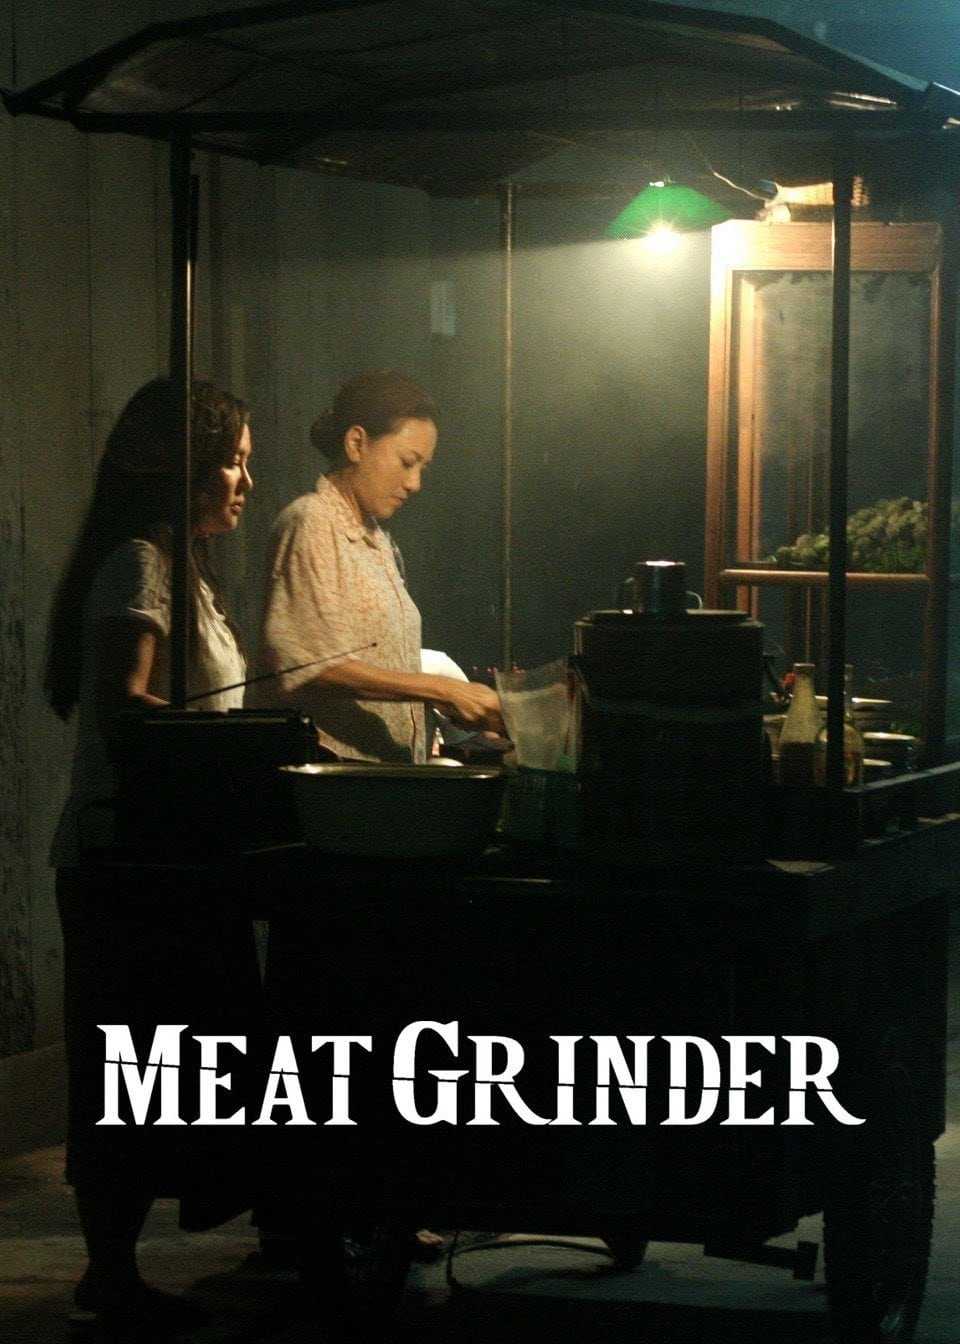 Cối xay thịt người - Meat grinder/cheuuat gaawn chim